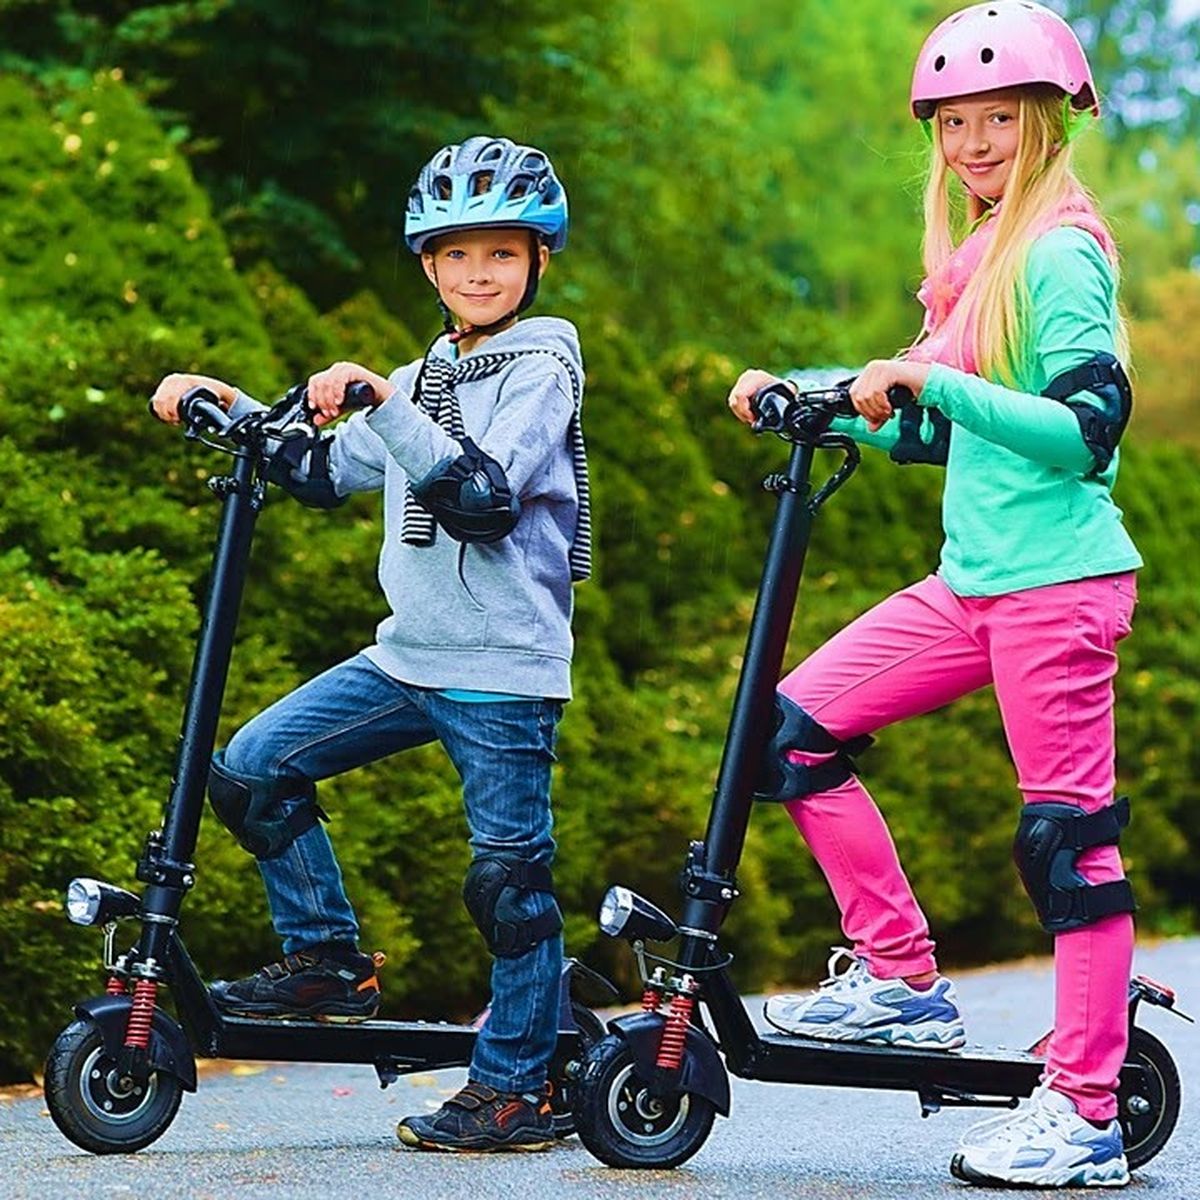 Estos son los 5 patinetes eléctricos para niños que recomendamos